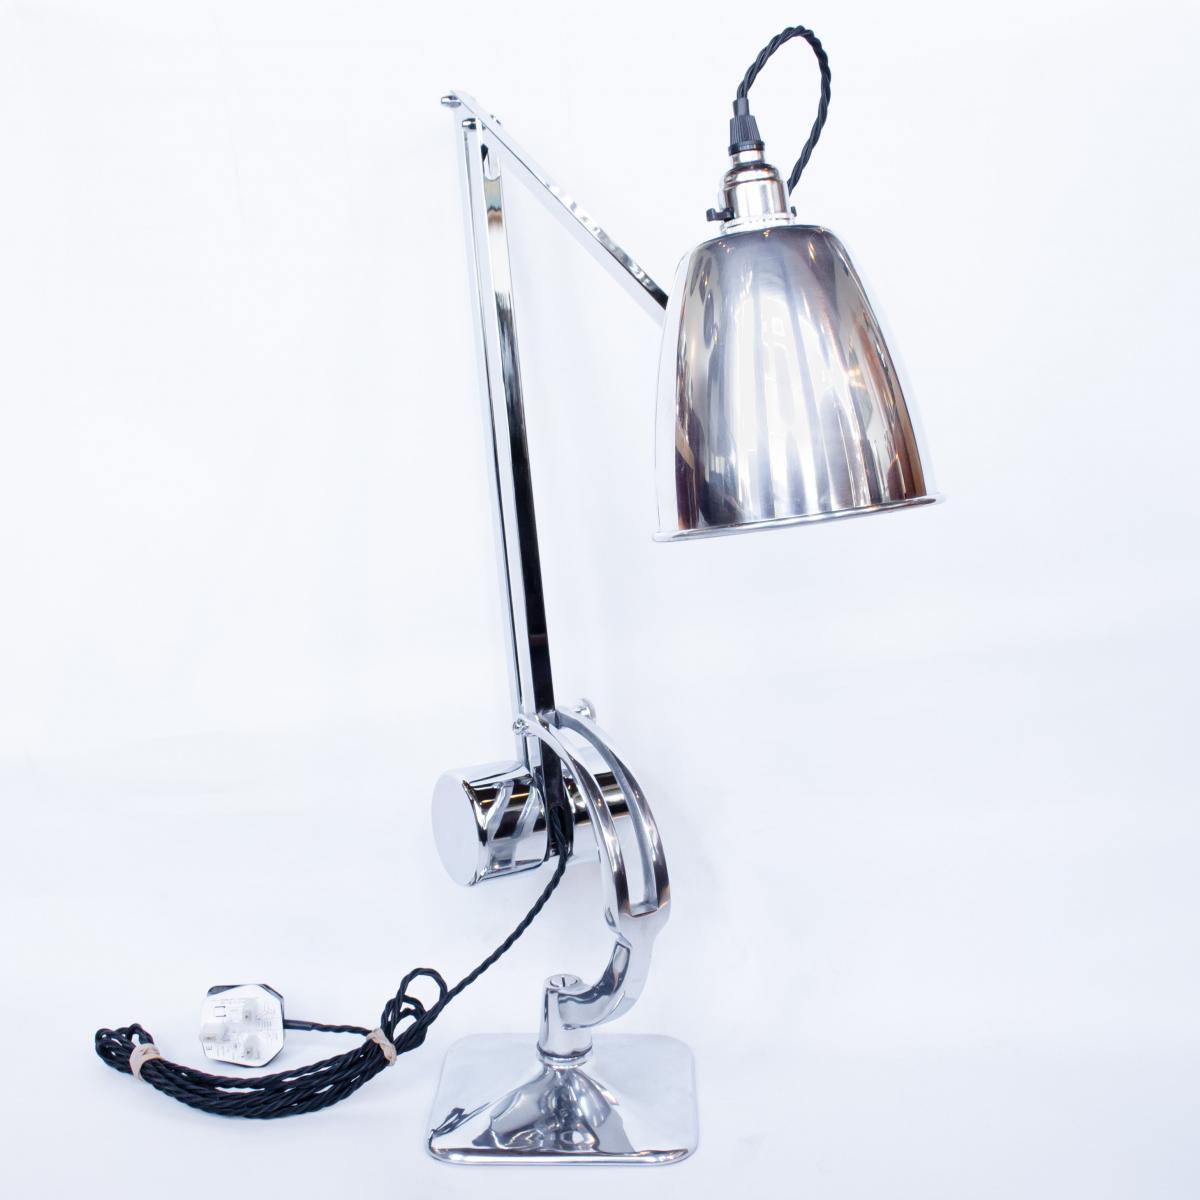 Hadrill & Horstmann, Counterpoise Desk Lamp